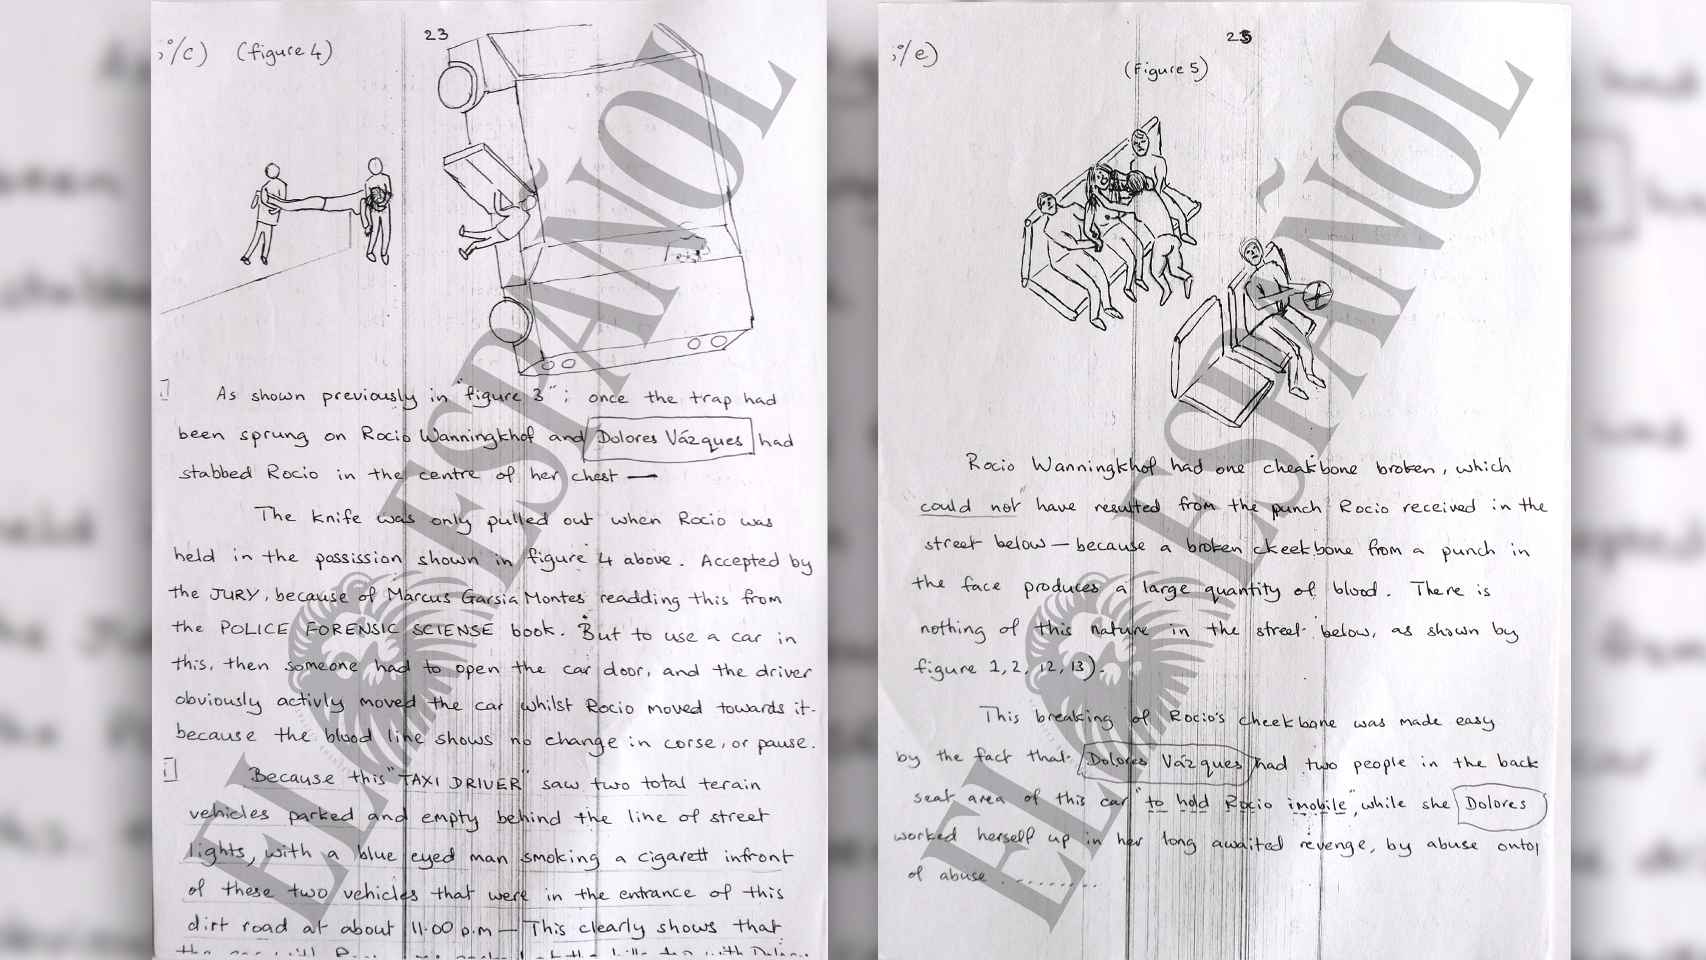 La carta está plagada con el nombre de Dolores Vázquez, intentando inculparla.